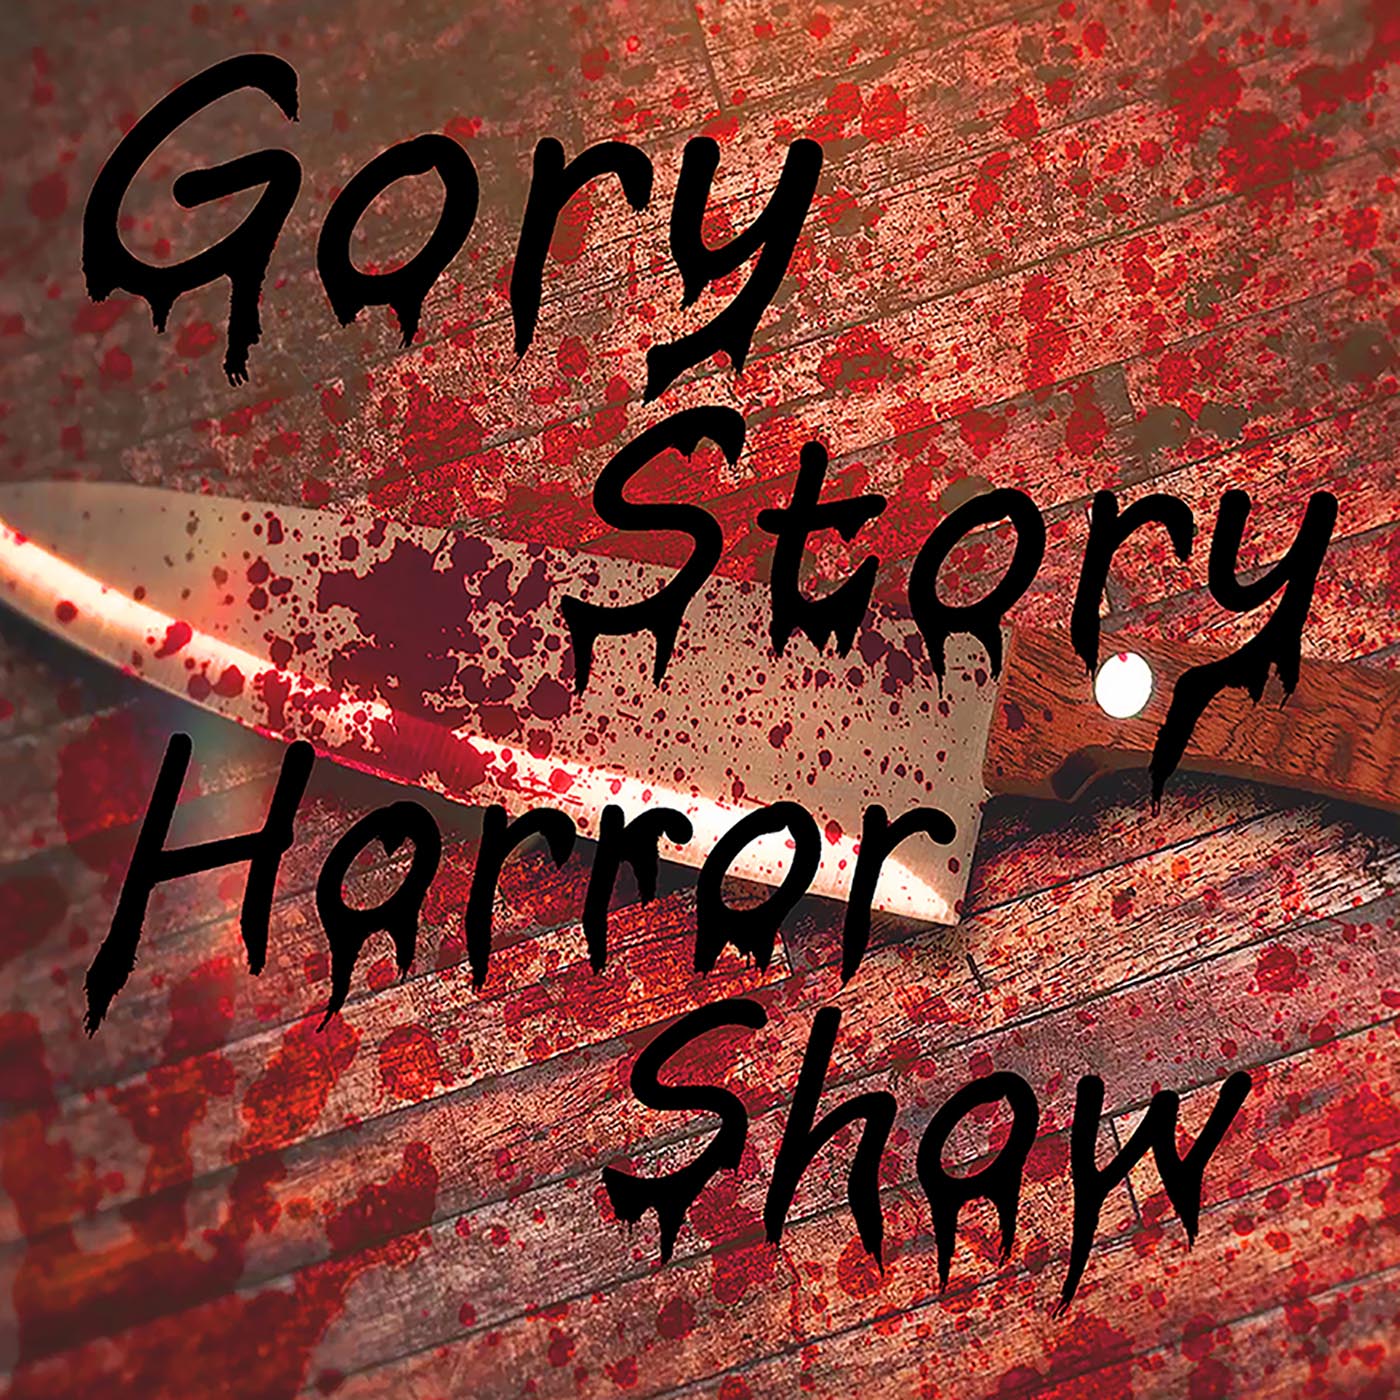 Show artwork for Gory Story Horror Show